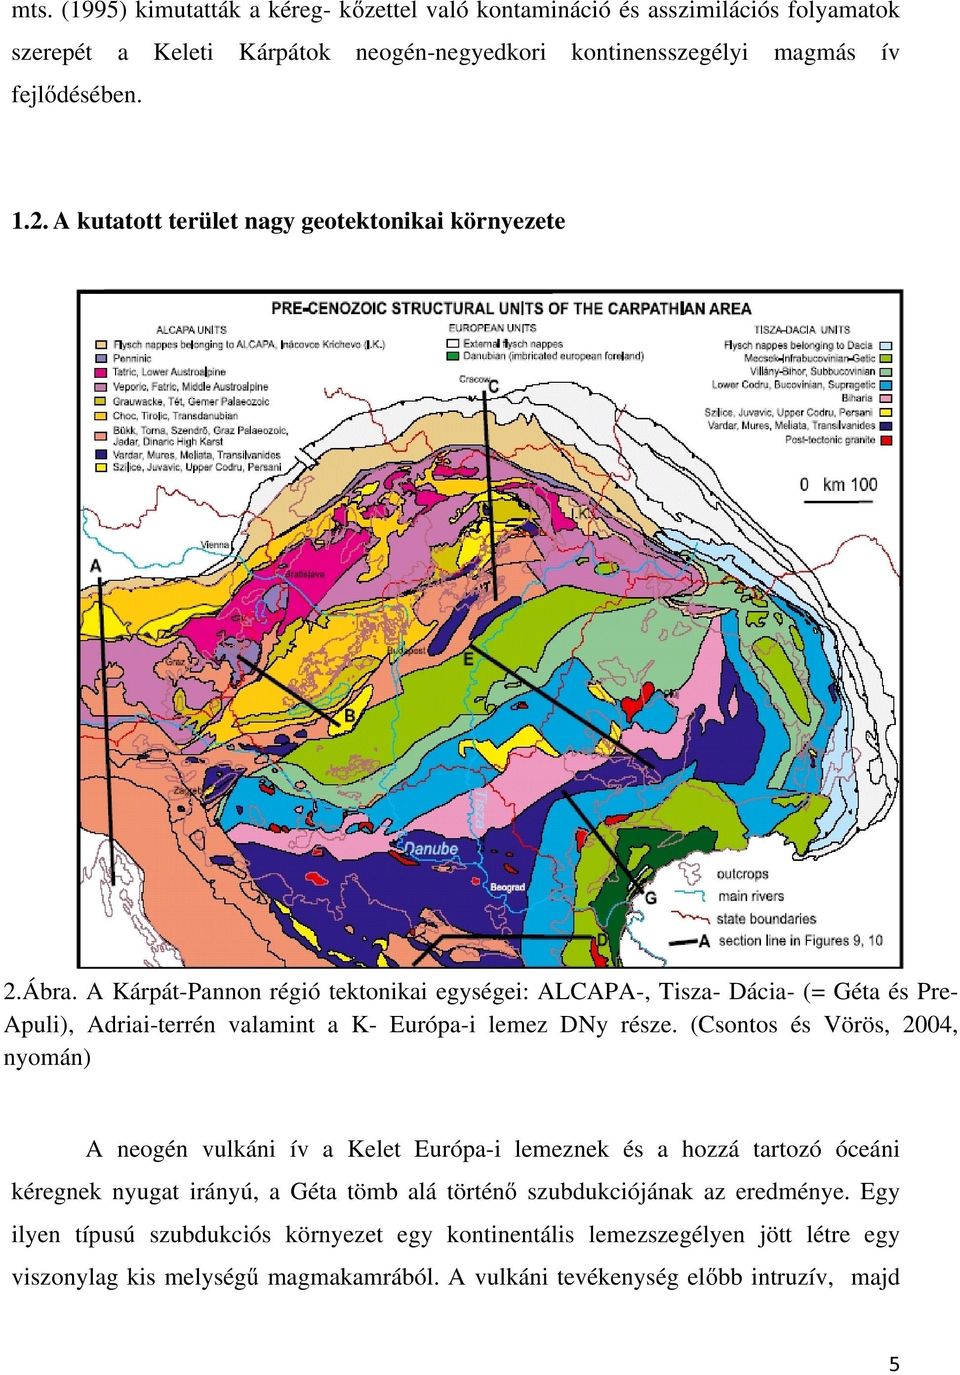 A Kárpát-Pannon régió tektonikai egységei: ALCAPA-, Tisza- Dácia- (= Géta és Pre- Apuli), Adriai-terrén valamint a K- Európa-i lemez DNy része.